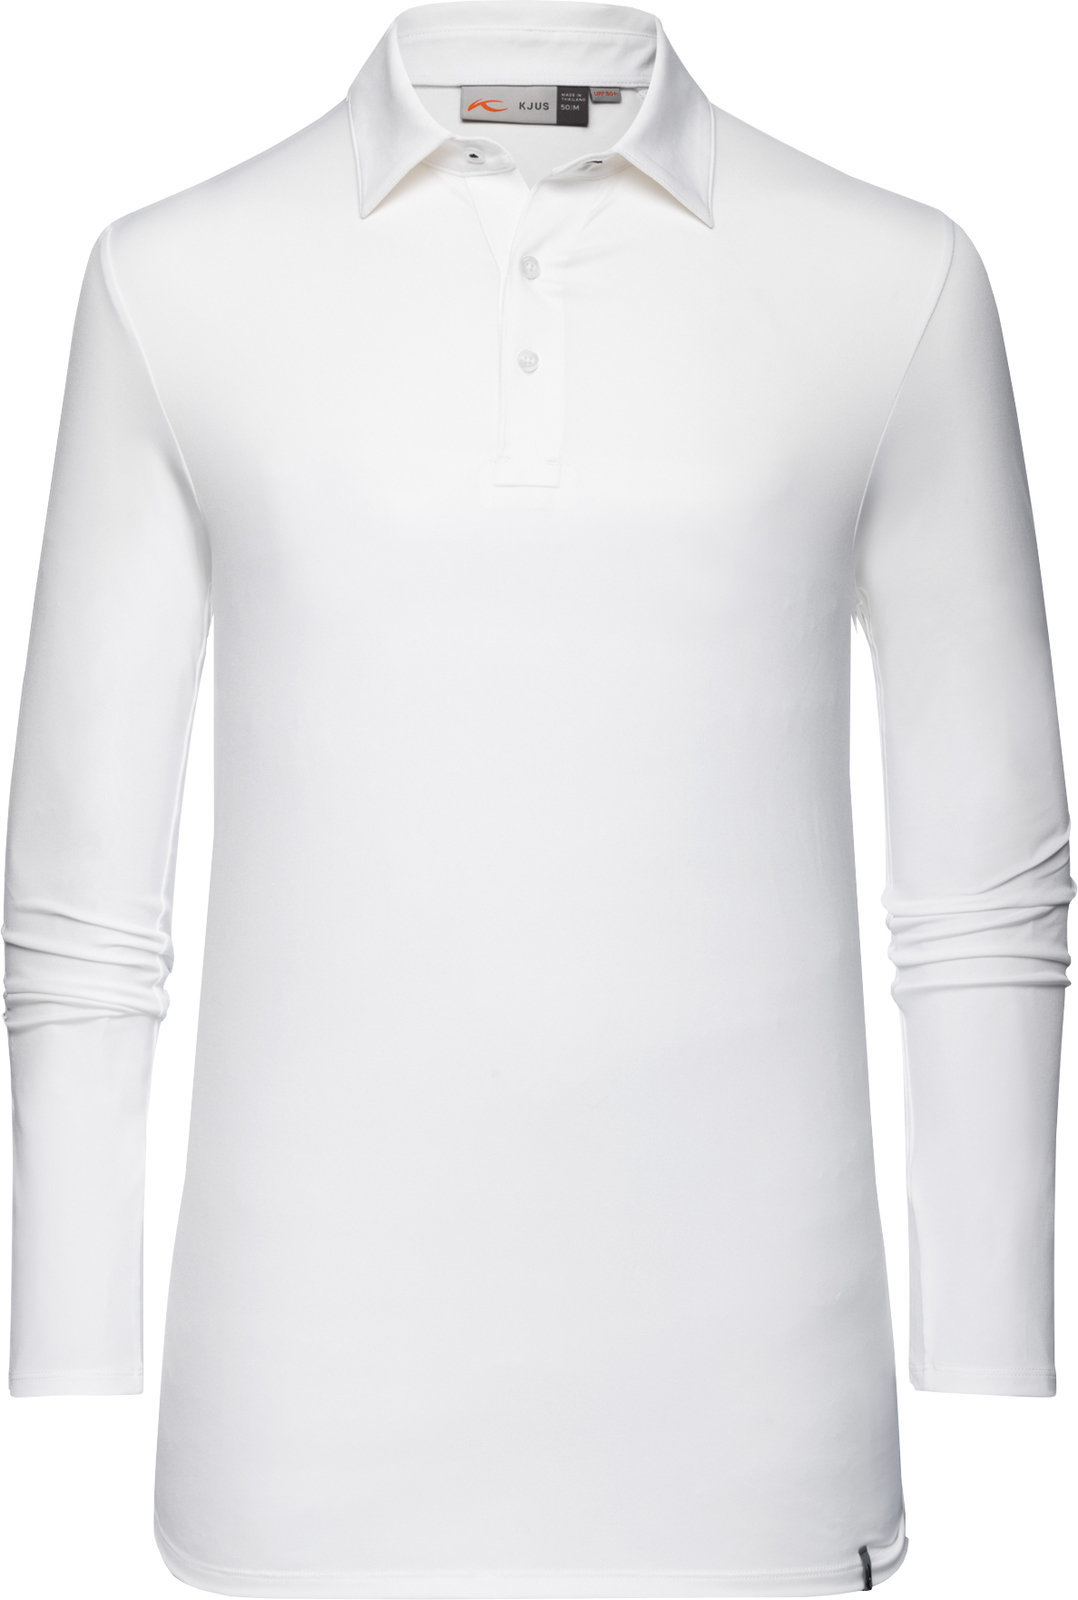 Polo trøje Kjus Soren Solid White 54